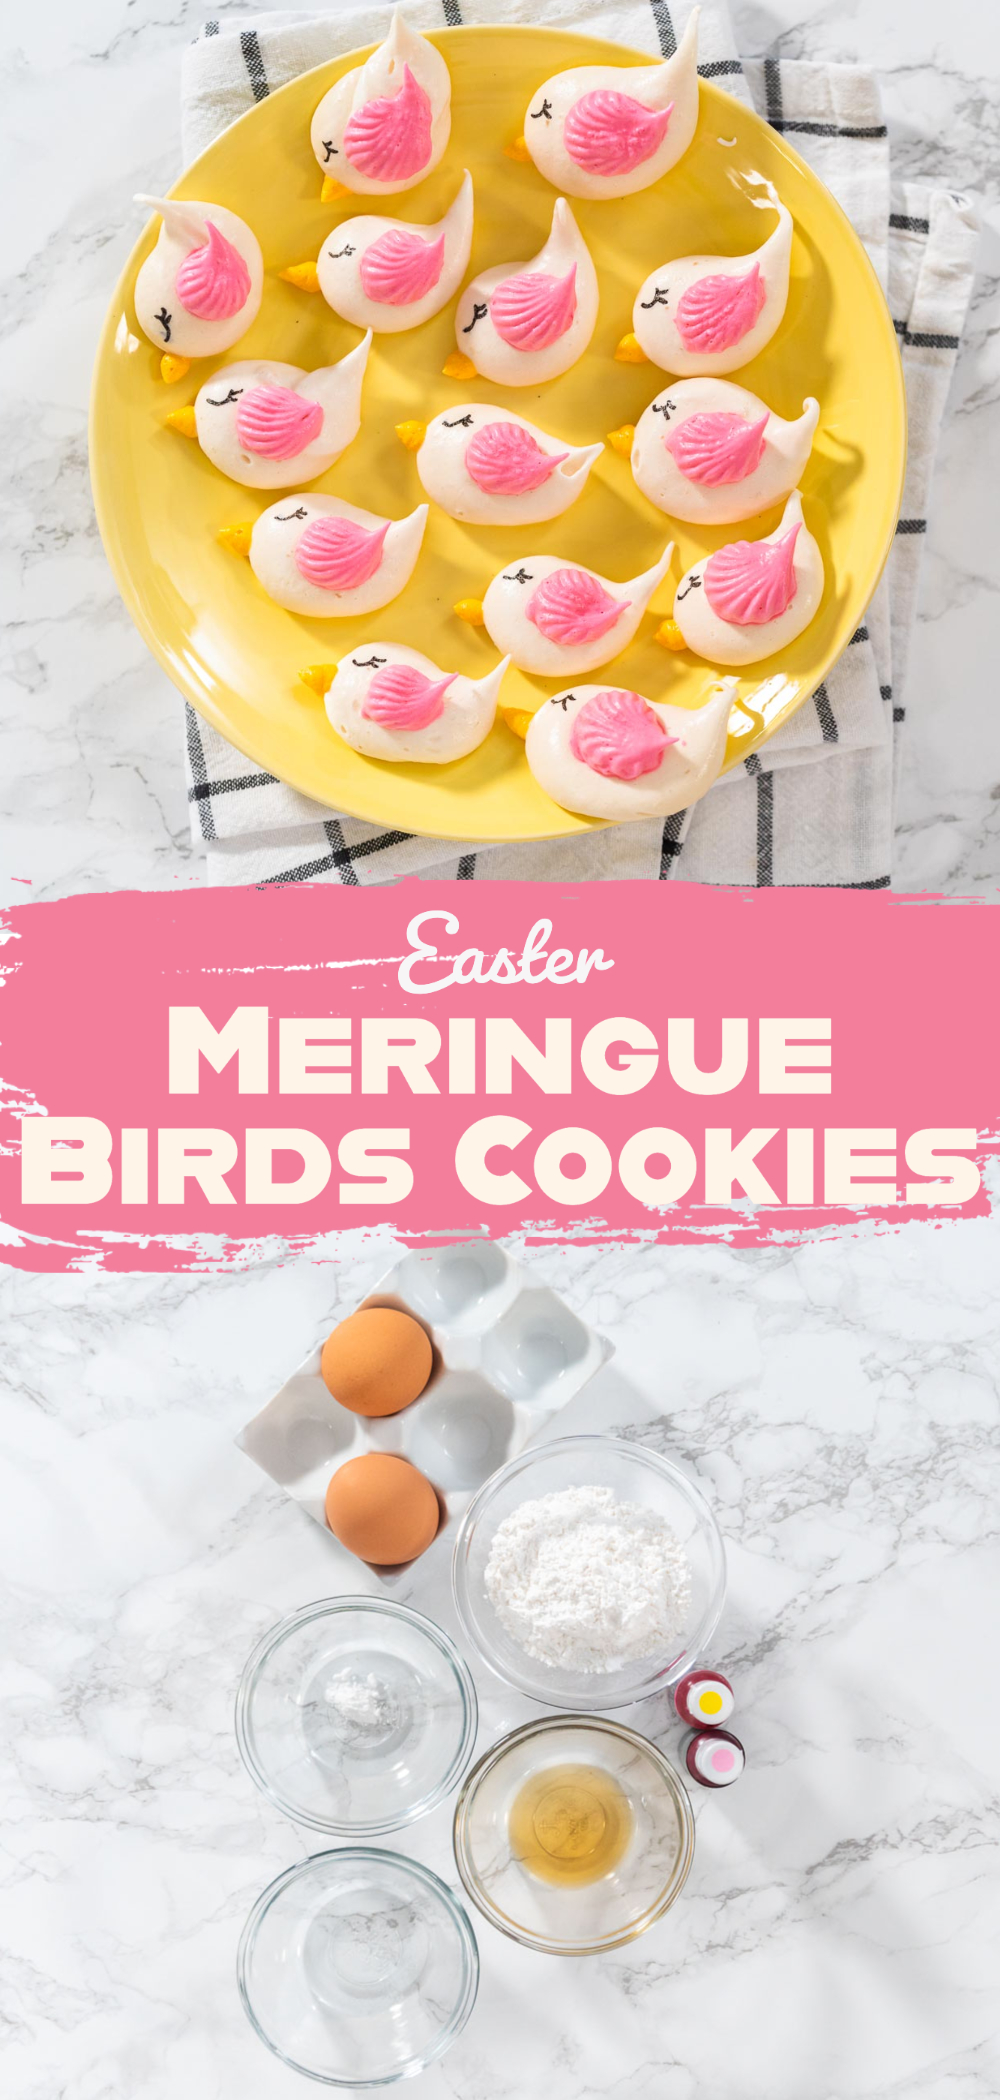 Easter Meringue Birds Cookies